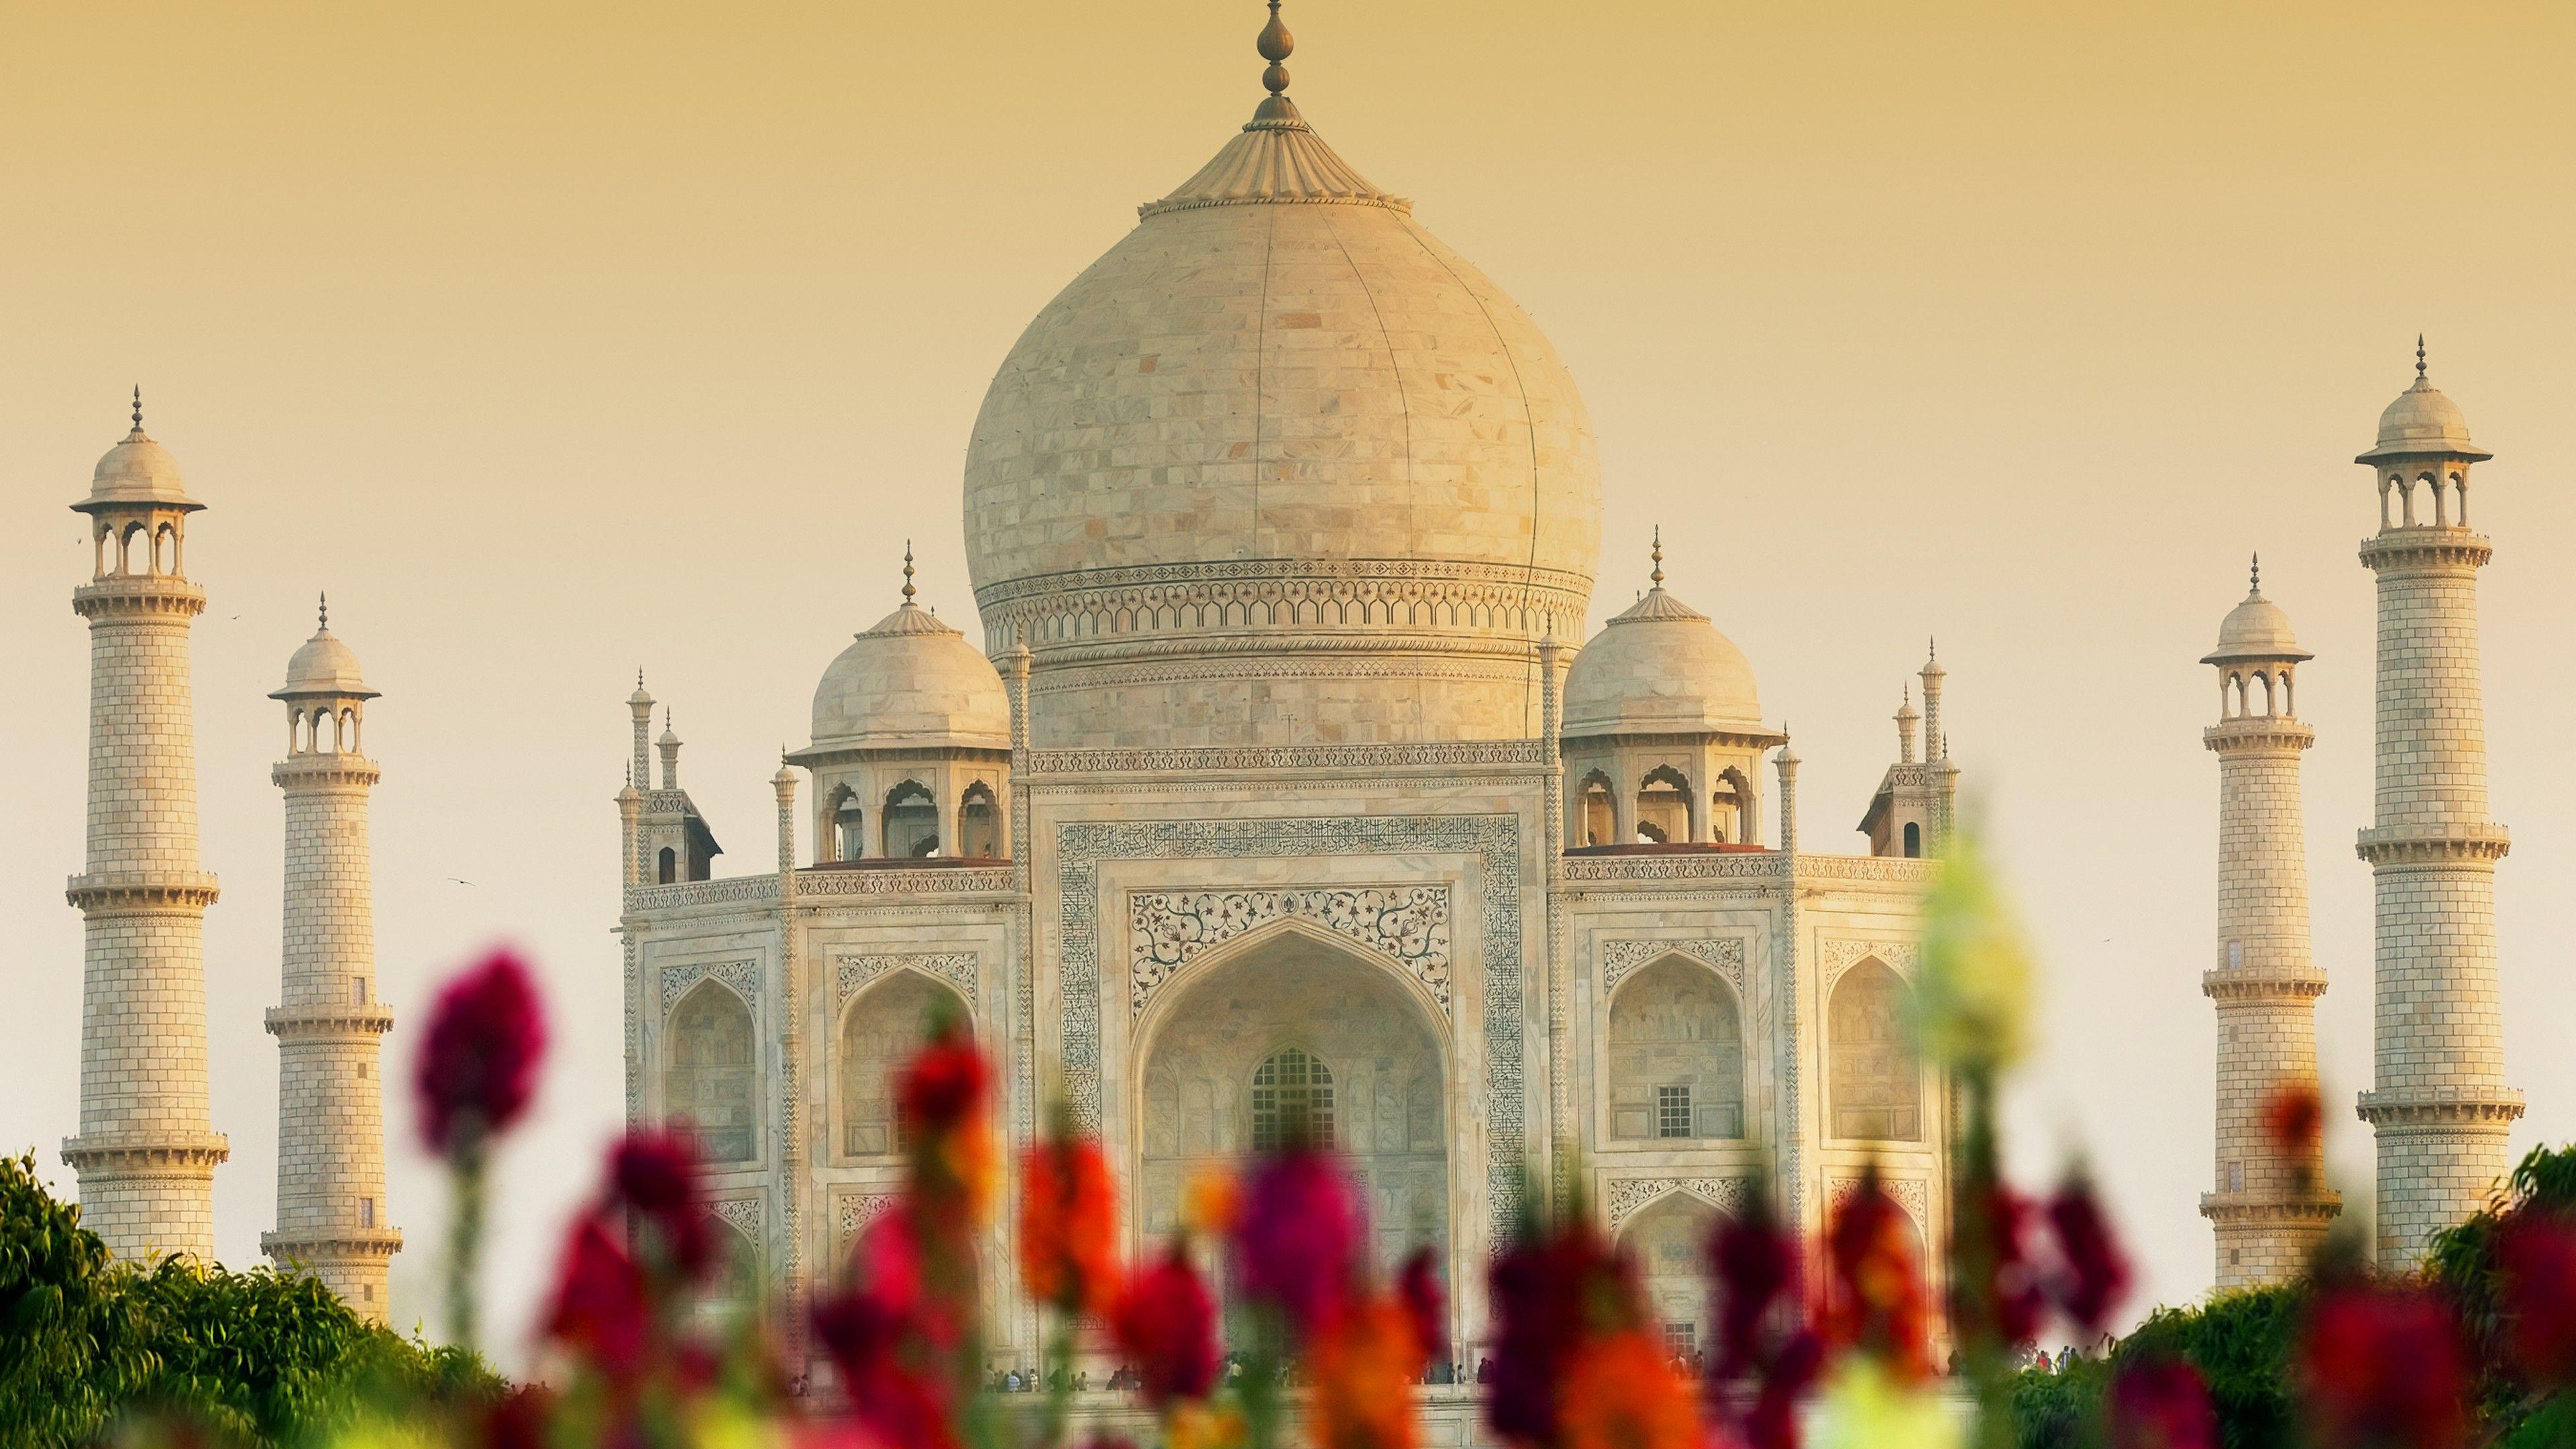 3840x2160 Hình nền Taj Mahal, Agra, Ấn Độ, HD, 4K, Thế giới ,.  Hình nền